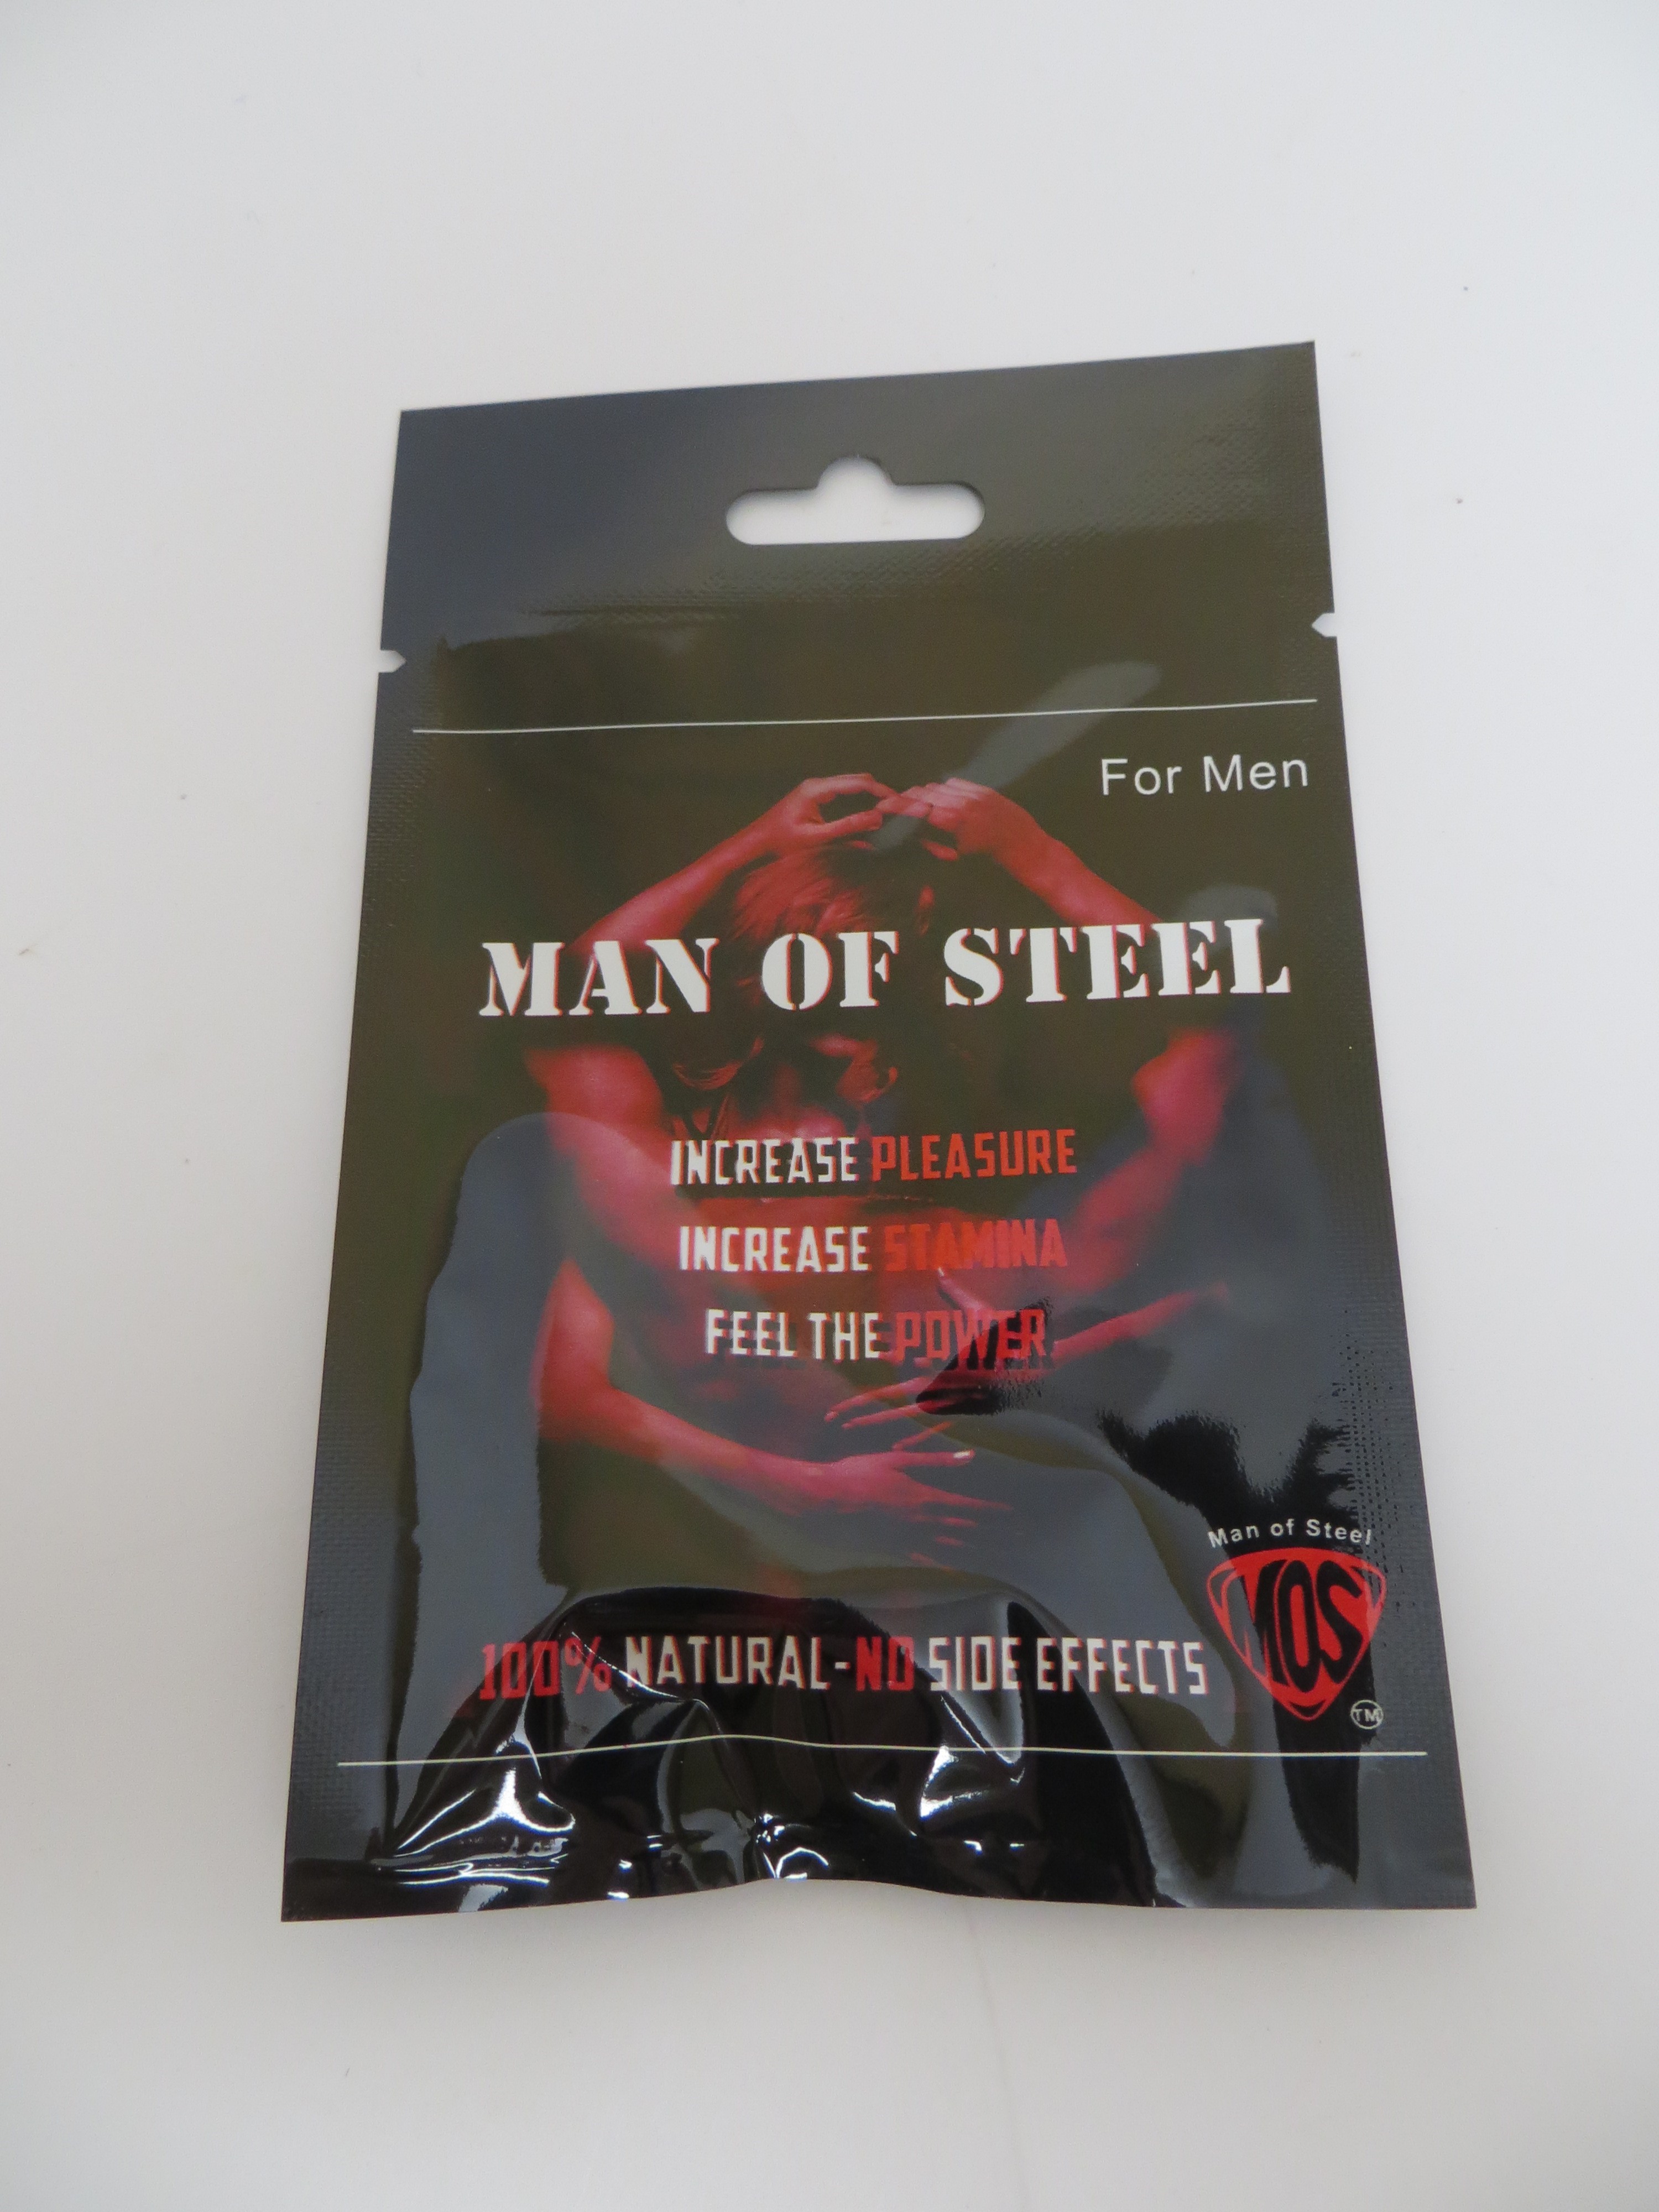 Billede af det ulovlige produkt: Man of Steel